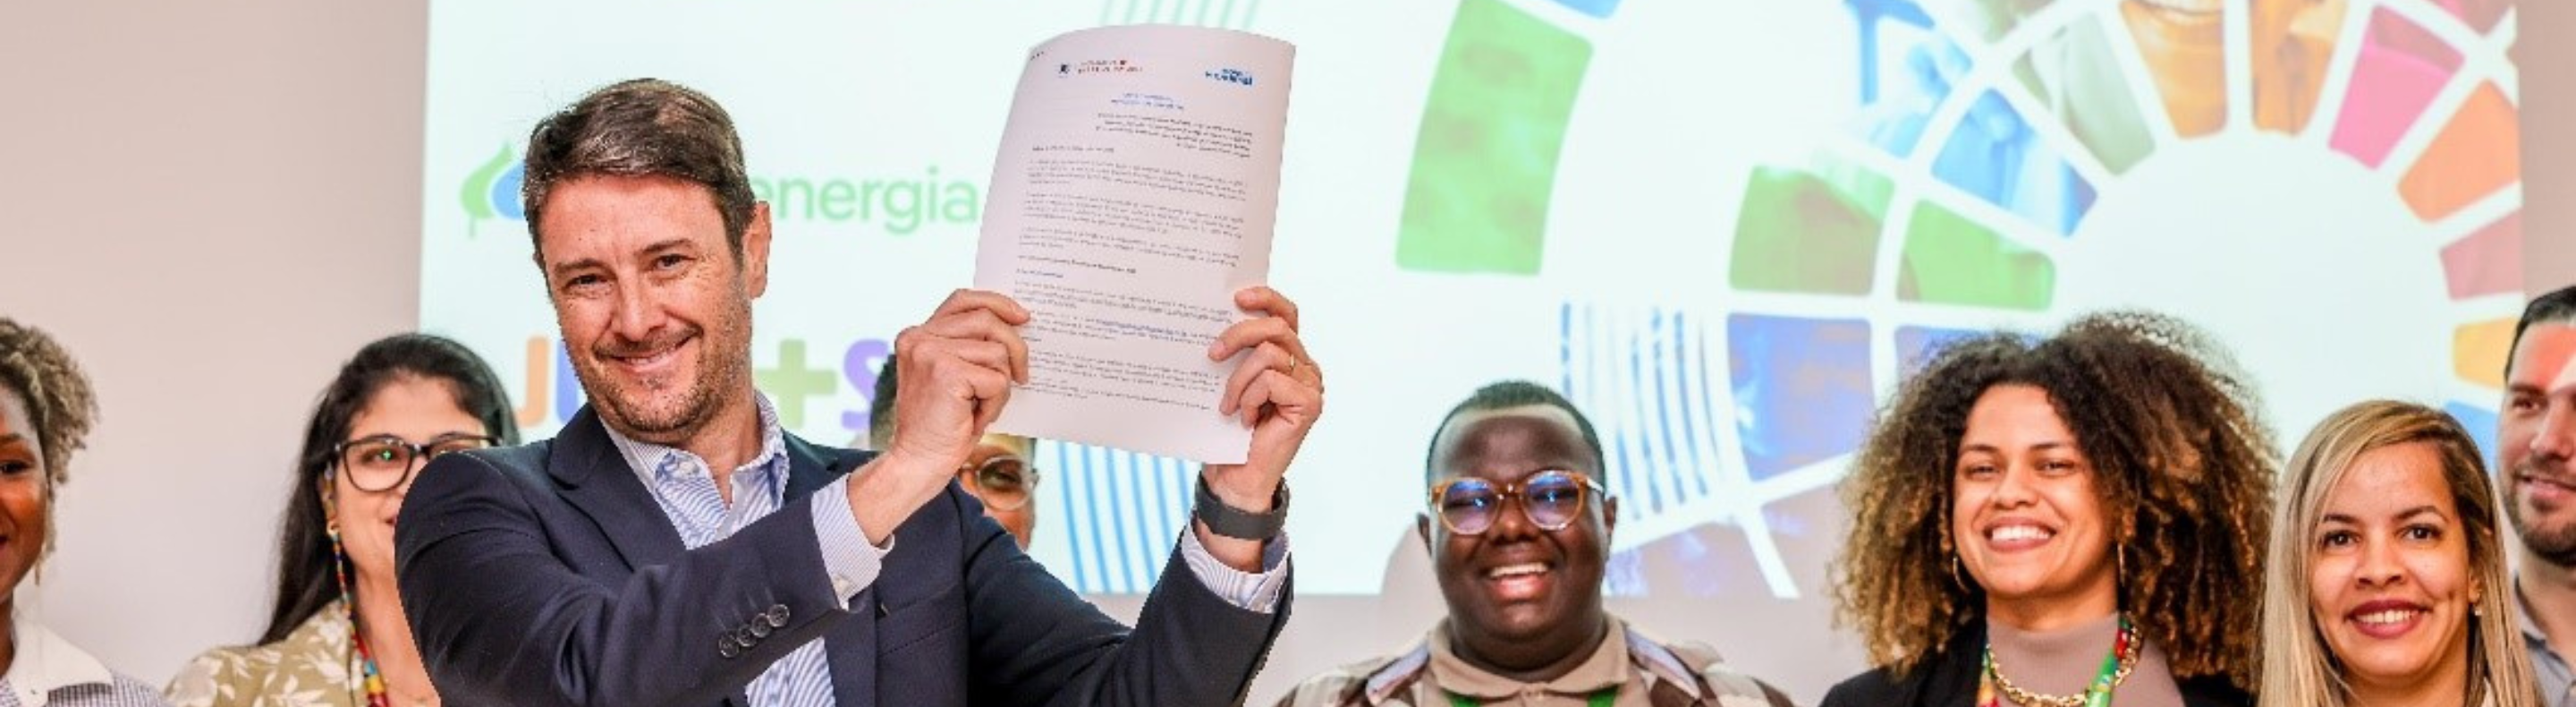 Eduardo Capelastegui, CEO da Neoenergia, comemora assinatura dos compromissos com Pacto Global da ONU -  Foto: Divulgação Neoenergia - Ulisses Dumas